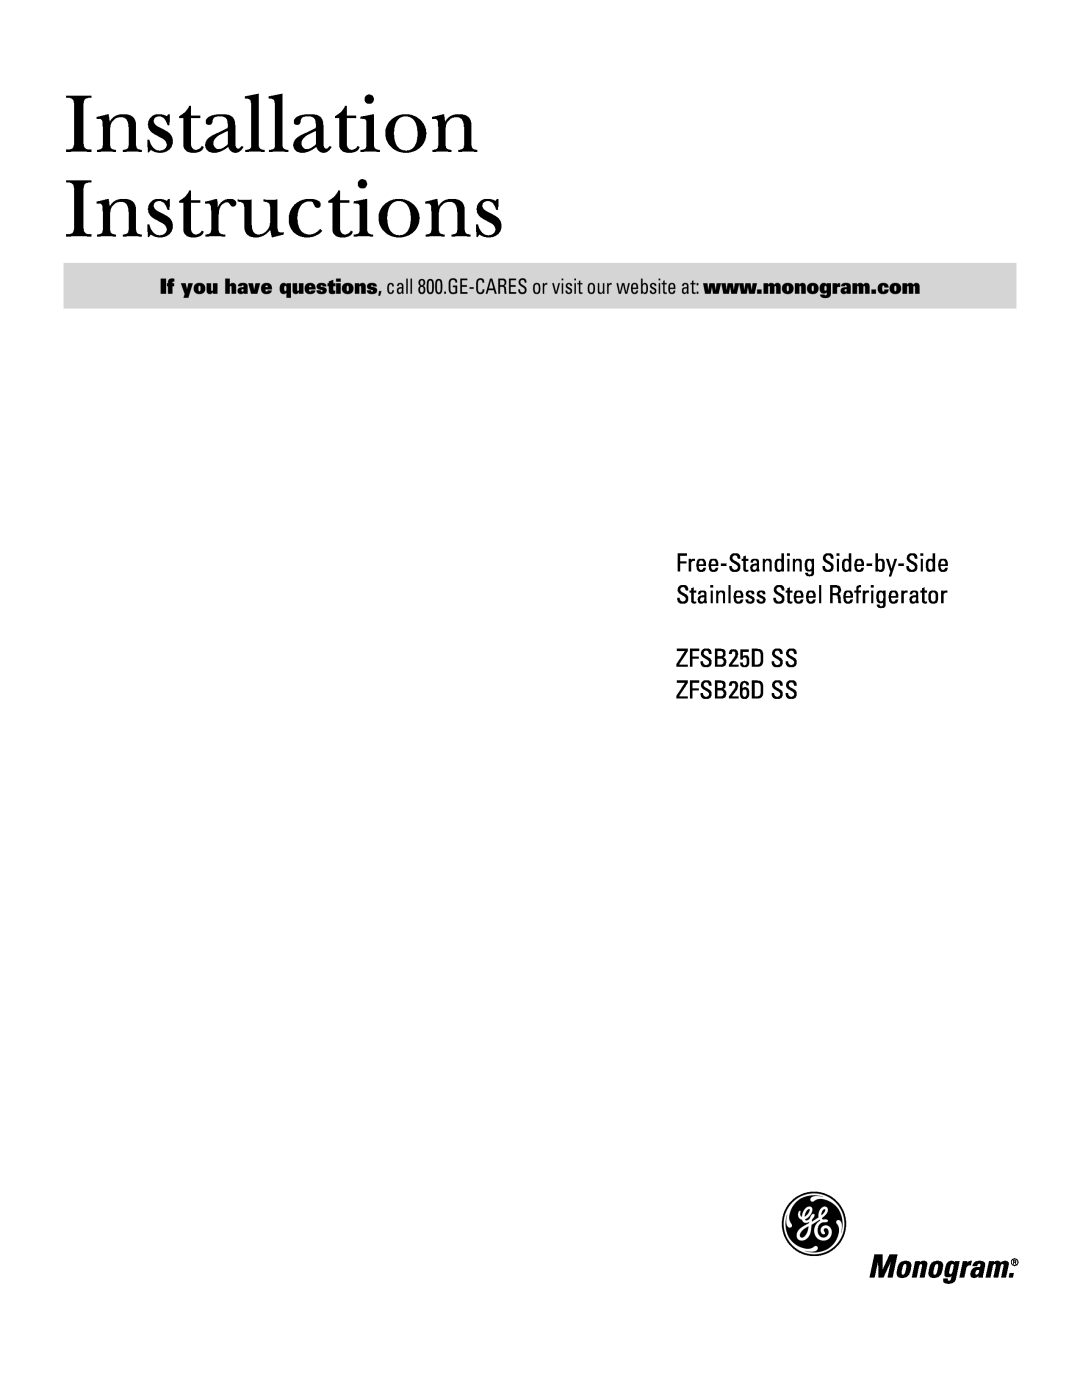 GE ZFSB26D SS, ZFSB25D SS installation instructions Installation Instructions 